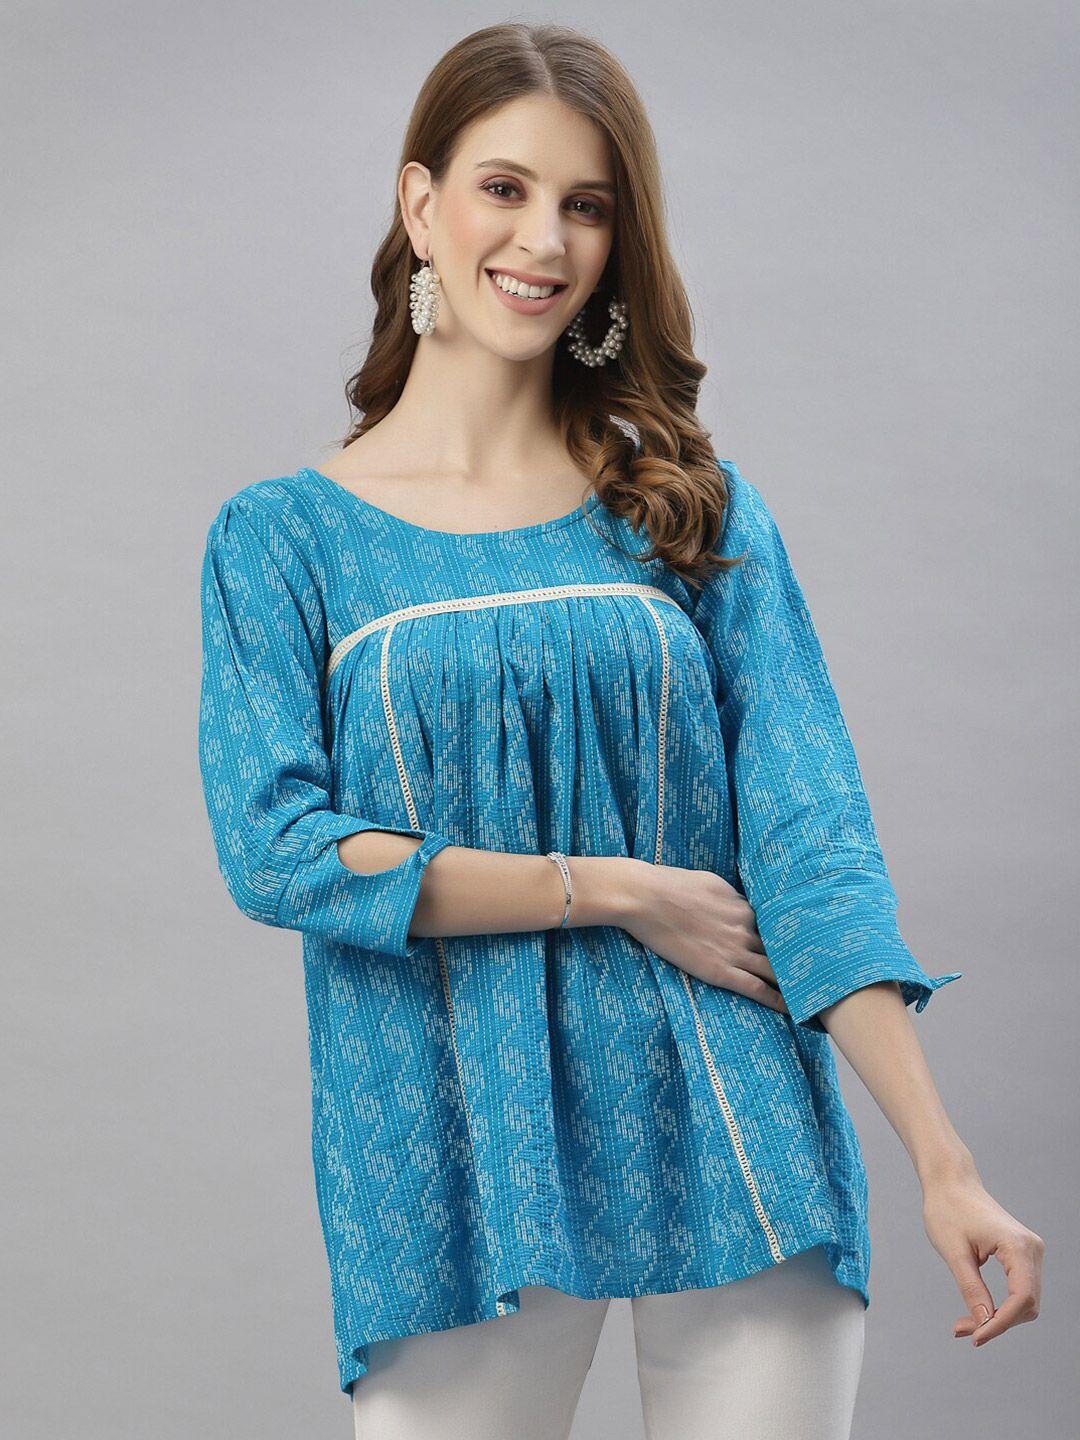 serona fabrics turquoise blue & white tunic